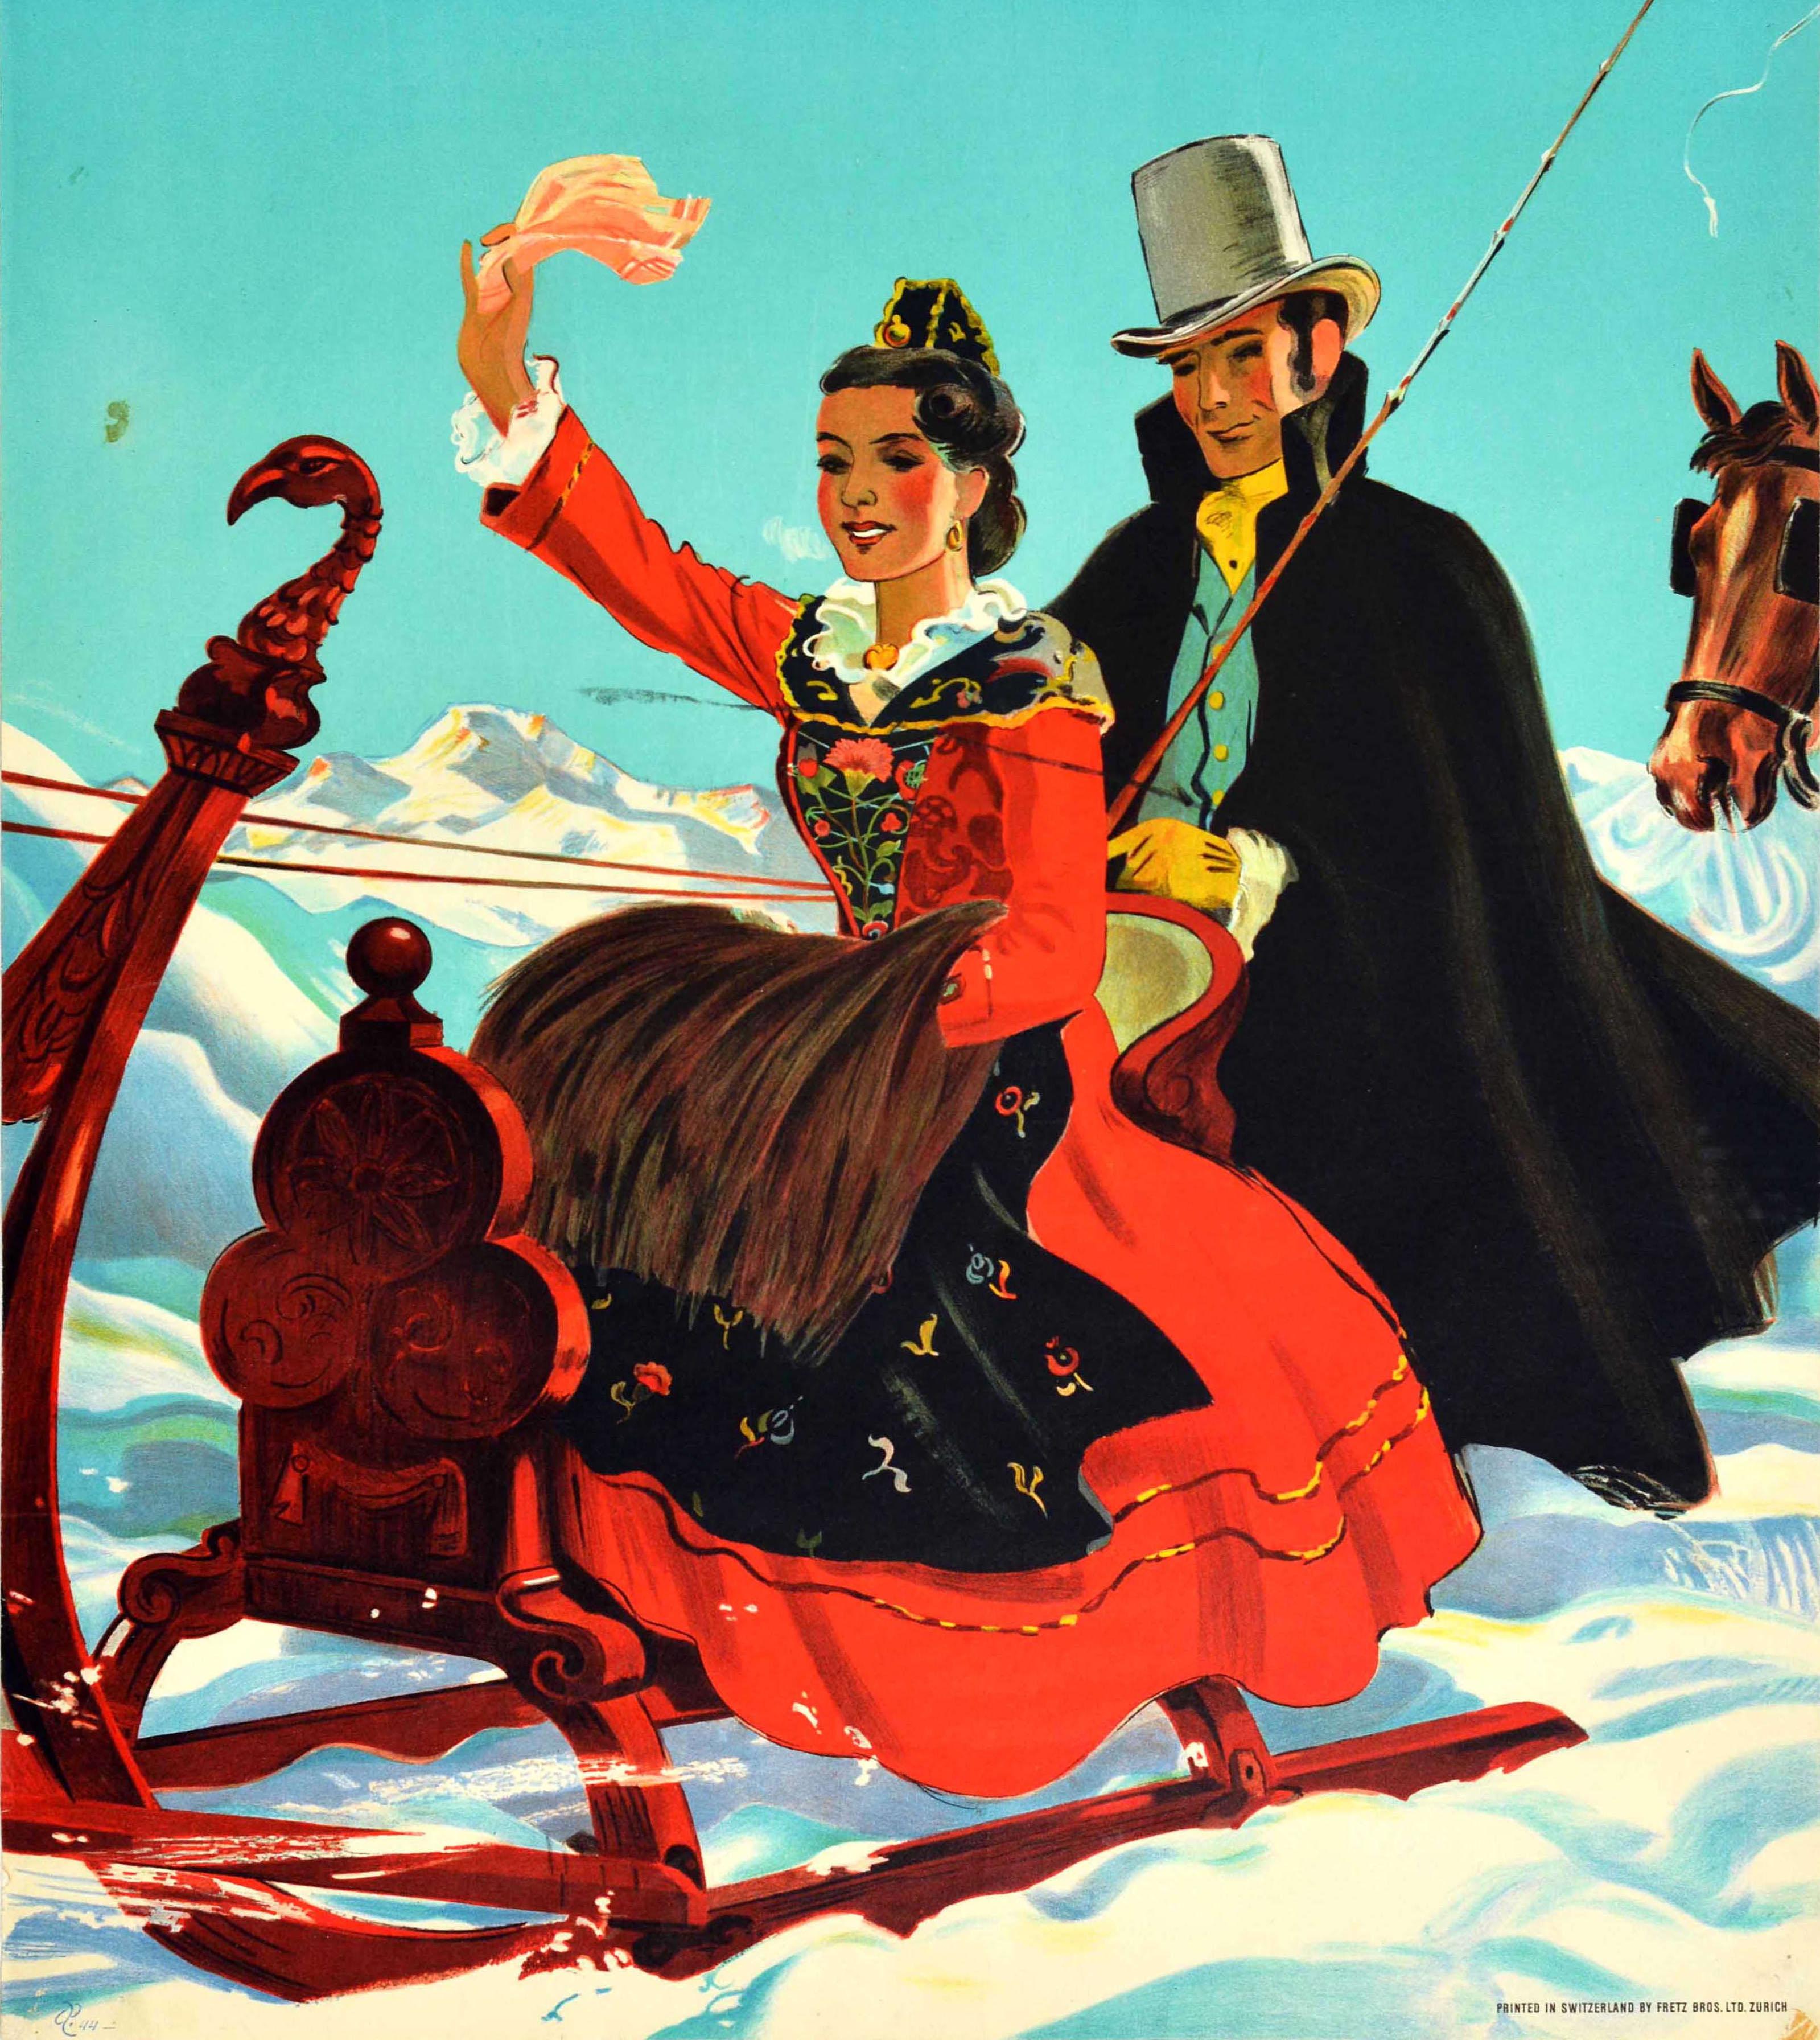 Original Vintage-Reiseplakat für St. Moritz mit einem großartigen Design von Hugo Laubi (1888-1959), das eine lächelnde Dame in einem traditionellen roten Kleid zeigt, die mit einem Taschentuch winkt, während sie auf einem geschnitzten hölzernen